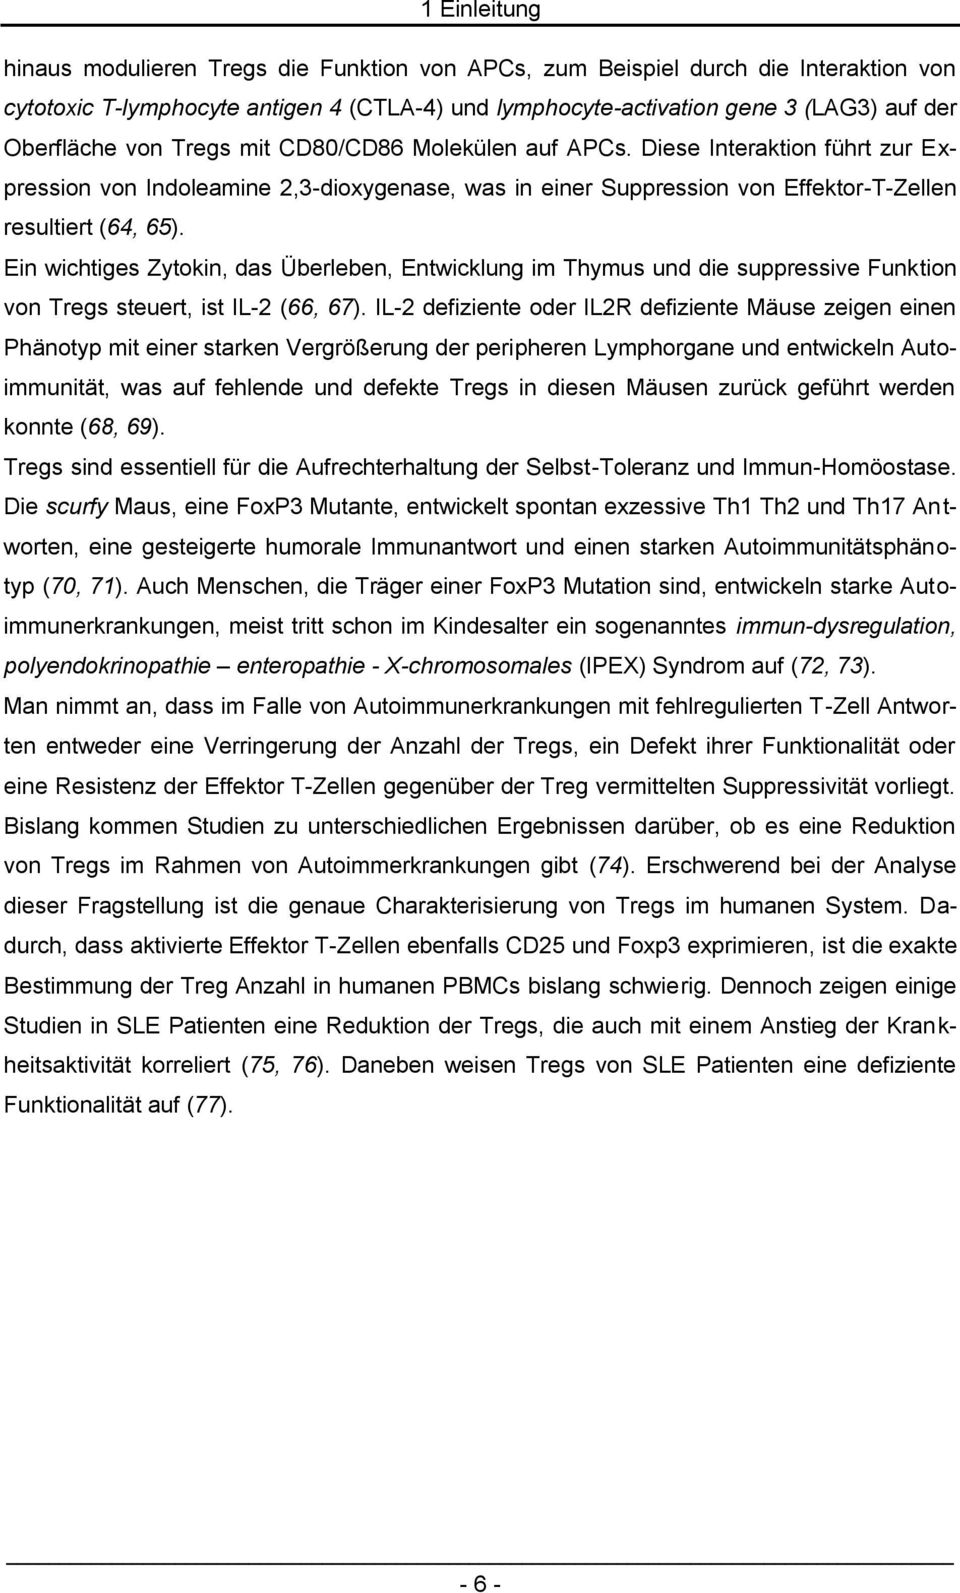 Ein wichtiges Zytokin, das Überleben, Entwicklung im Thymus und die suppressive Funktion von Tregs steuert, ist IL-2 (66, 67).